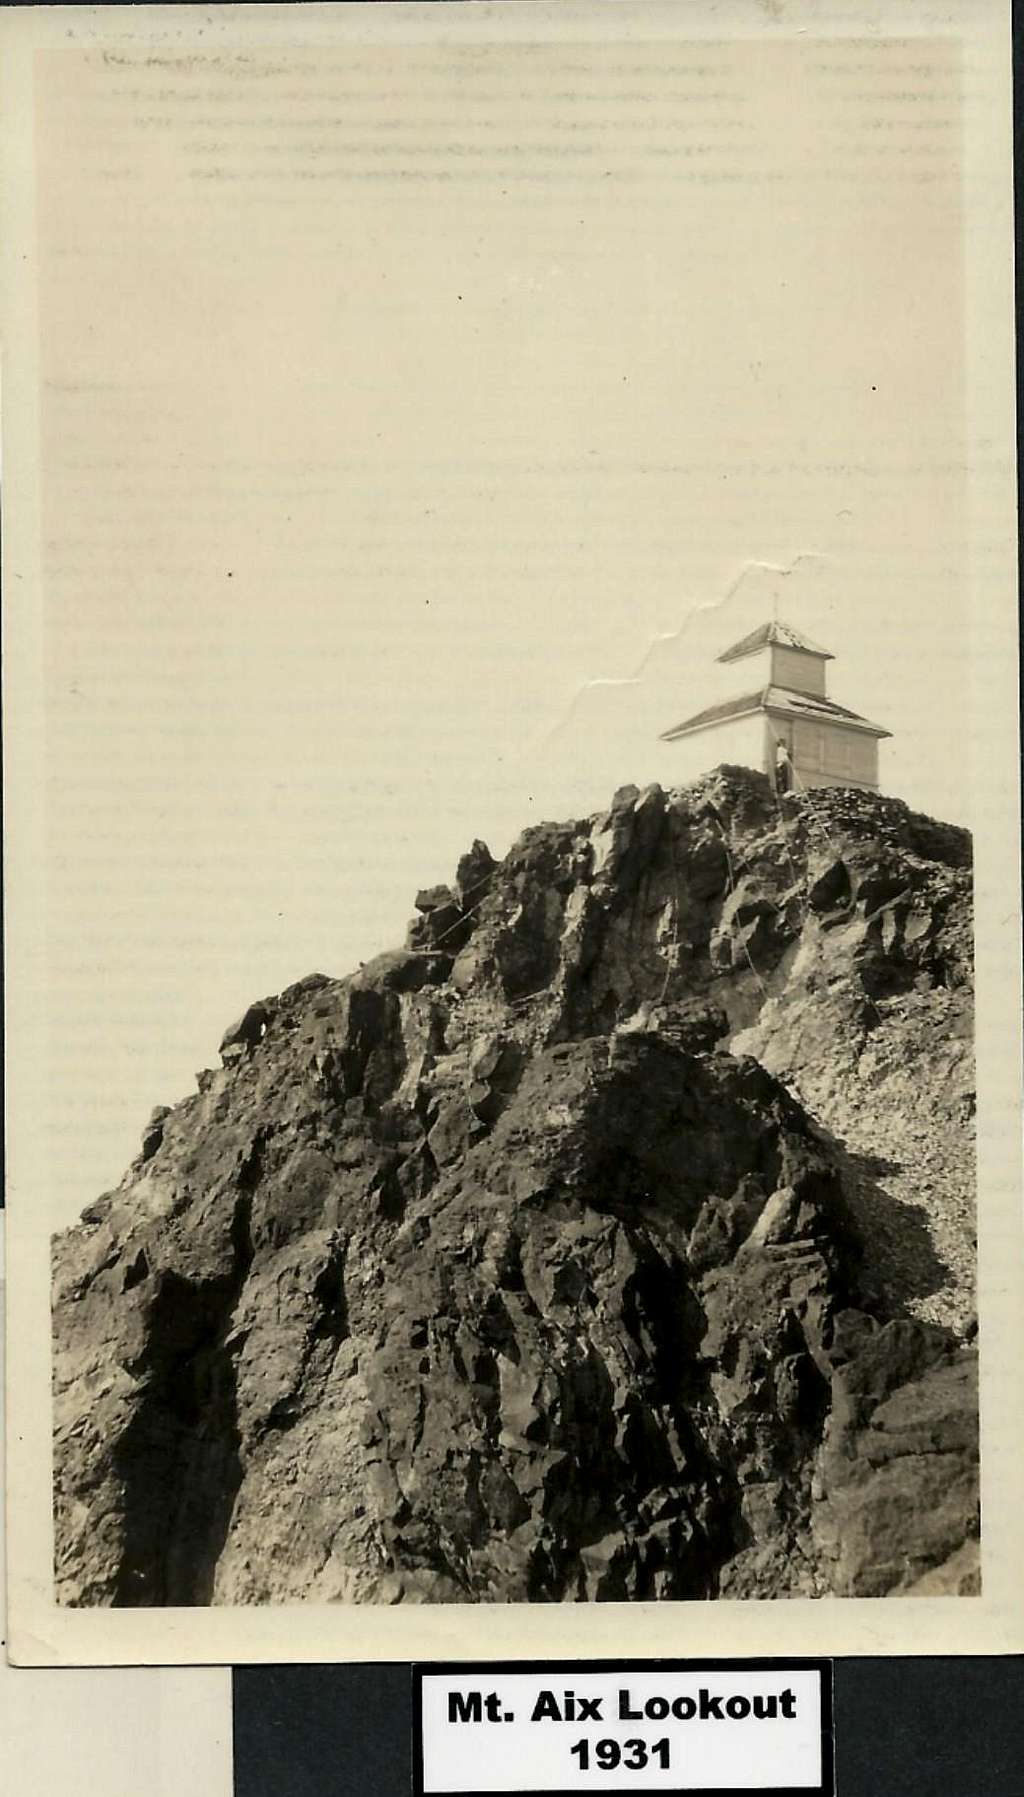 Mt. Aix Lookout 1931